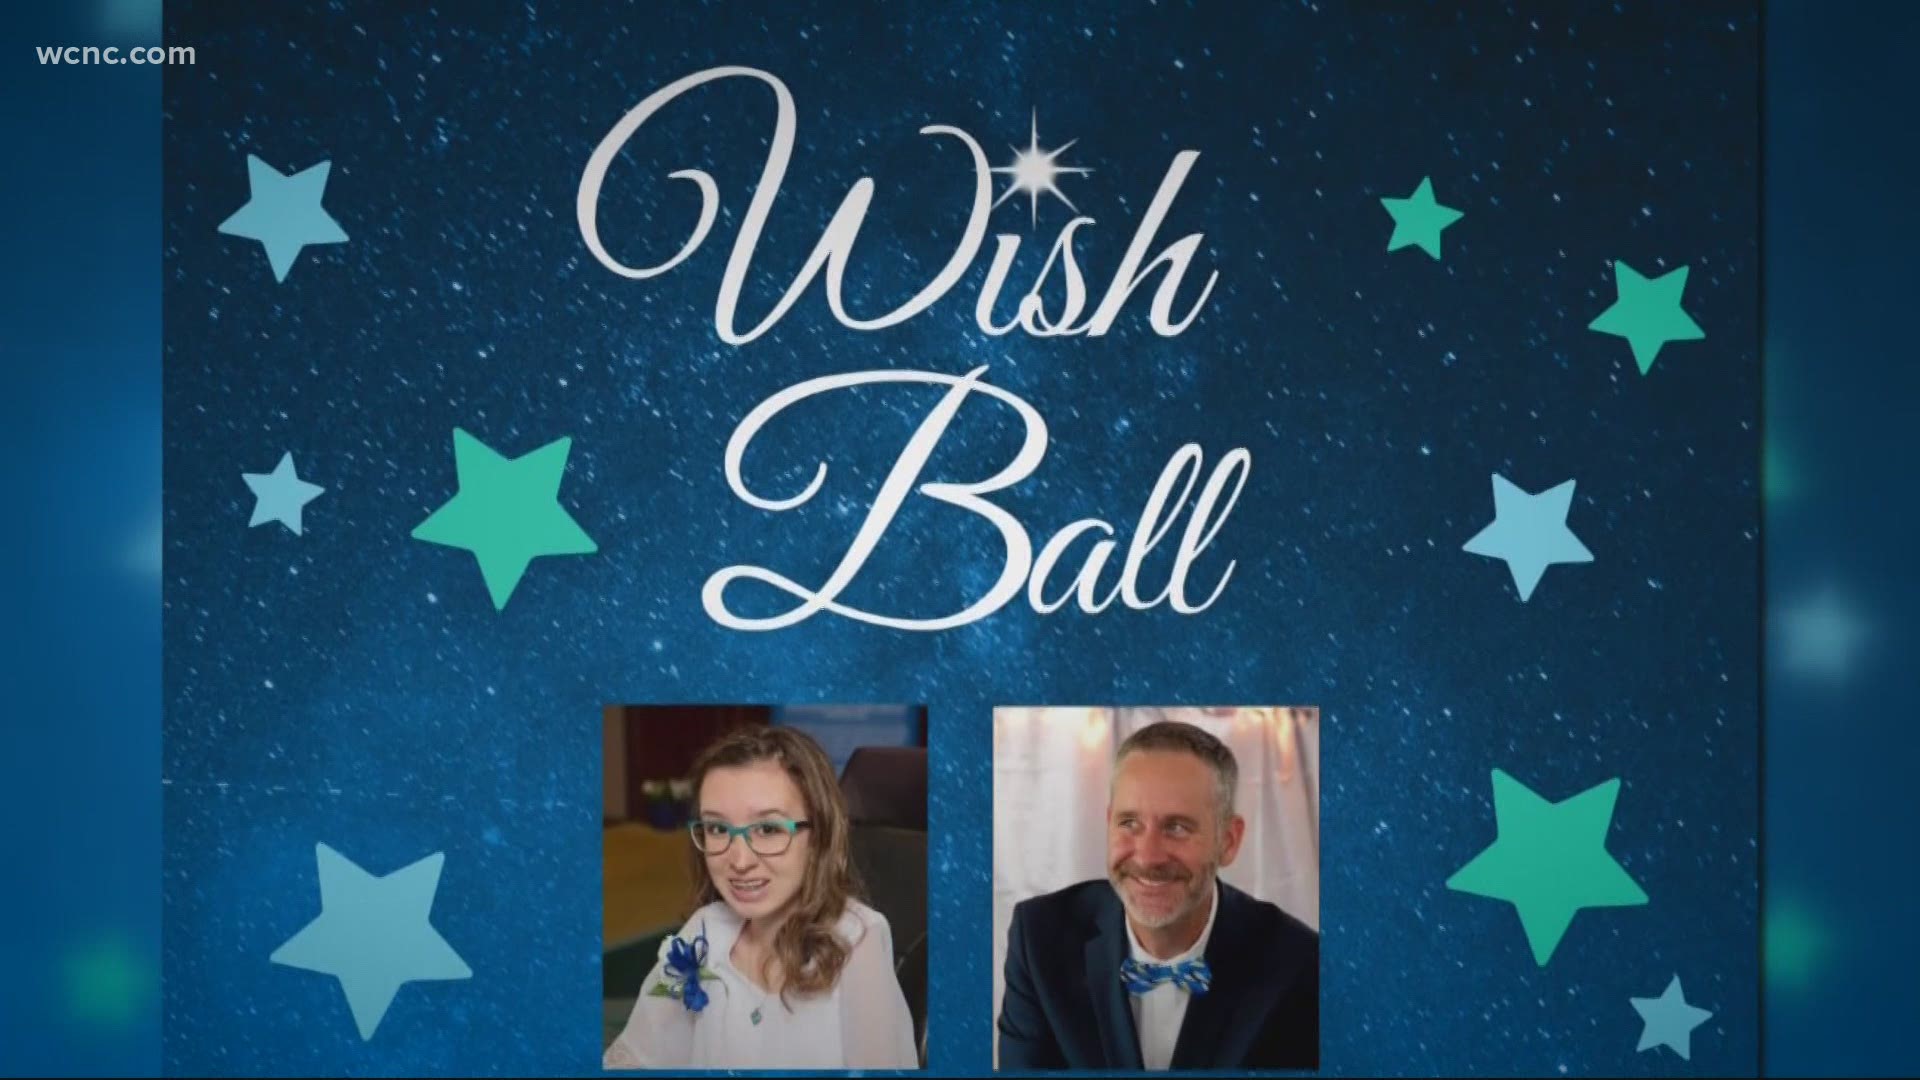 North Carolina's "Wish Kid" will host this year's Virtual Wish Ball.